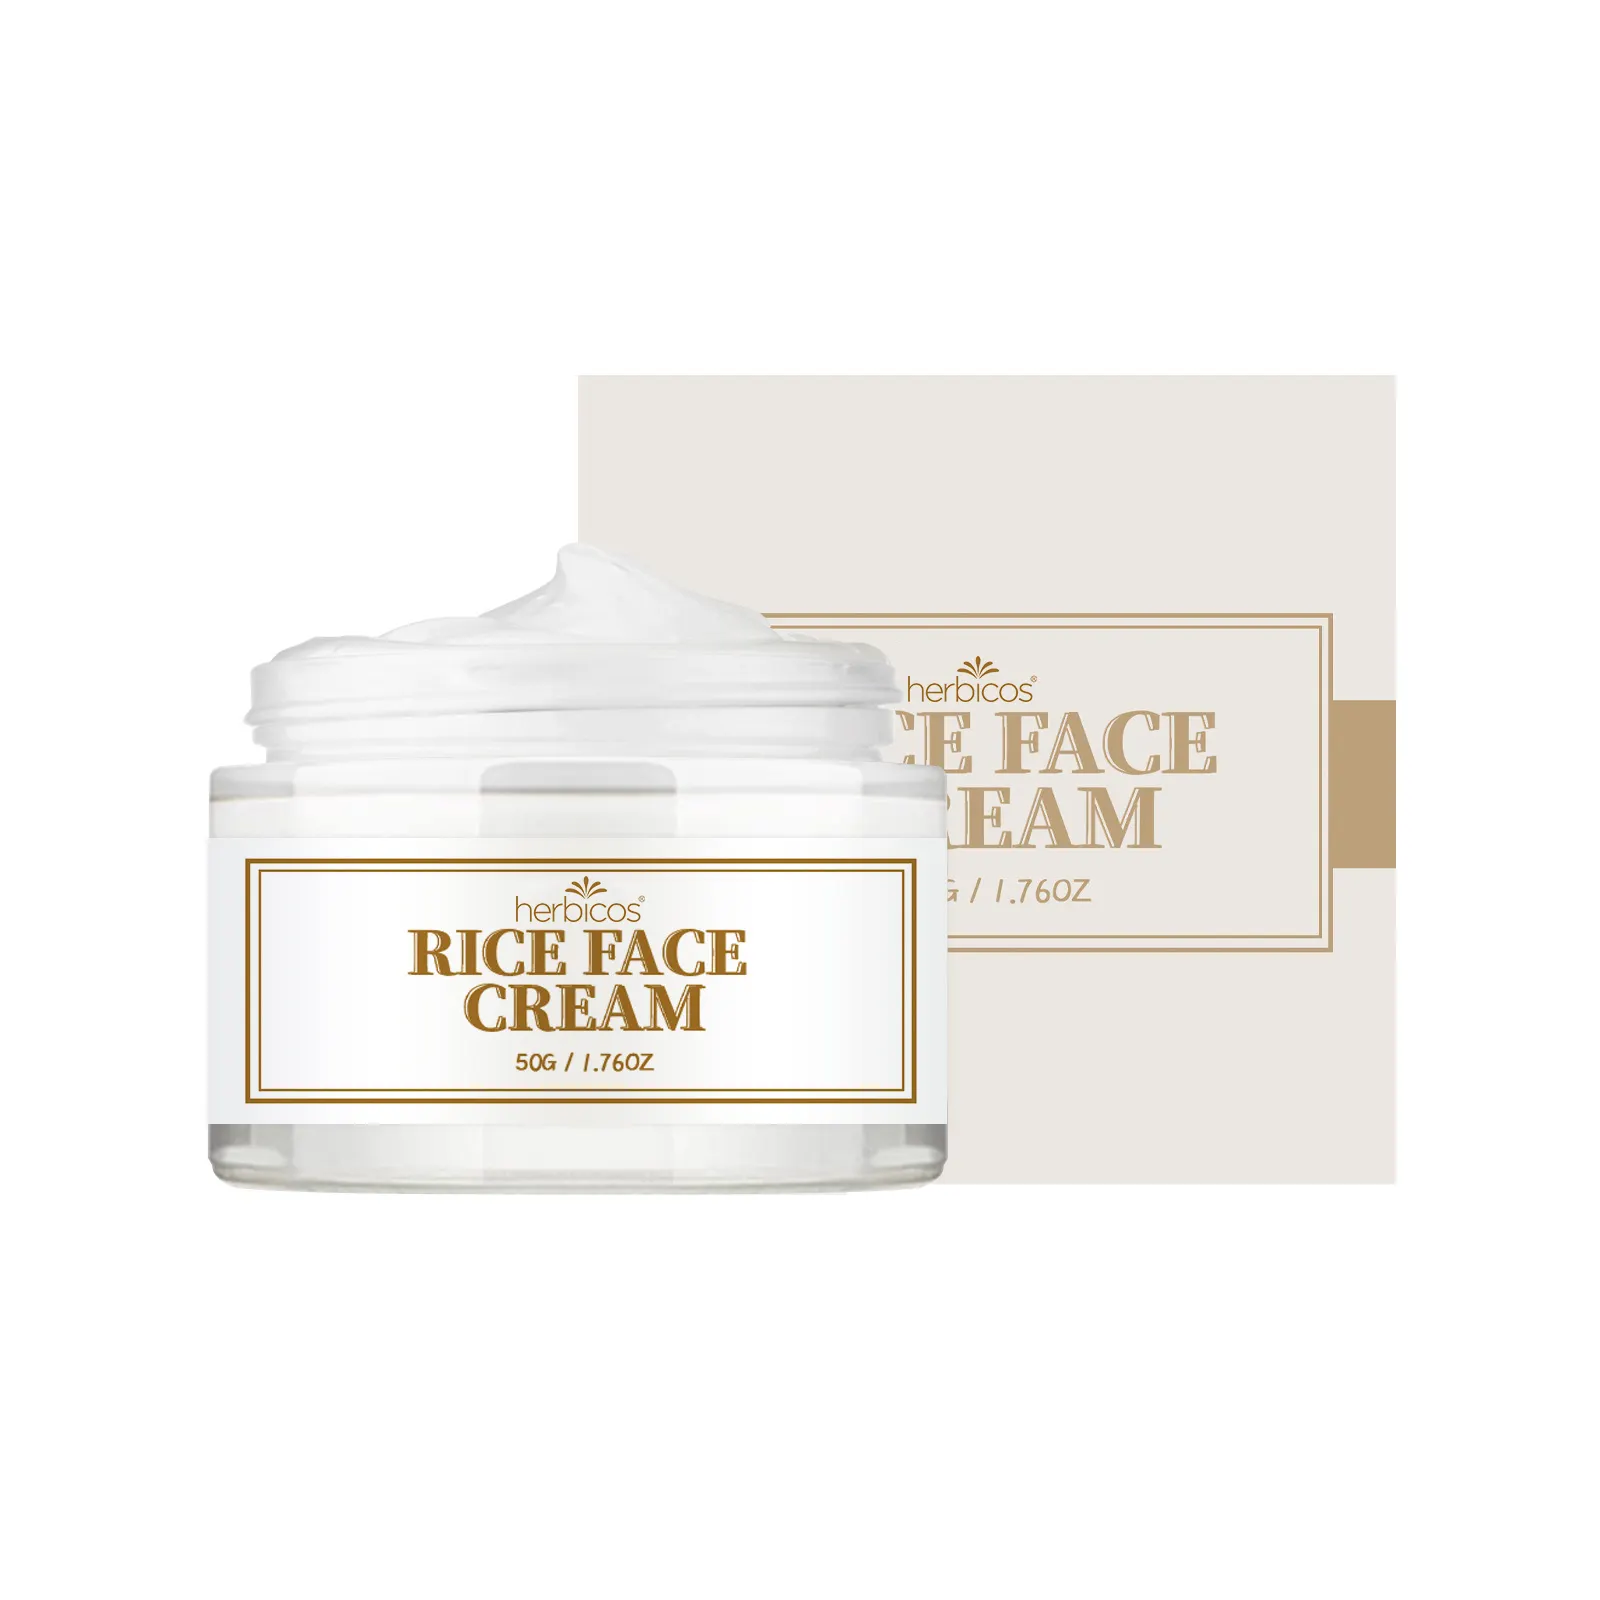 Crema reparadora para la cara que reduce los poros de larga duración, elimina las arrugas, crema hidratante para el rostro de pulpa cruda de arroz, Herbicos, Día de Corea, OEM